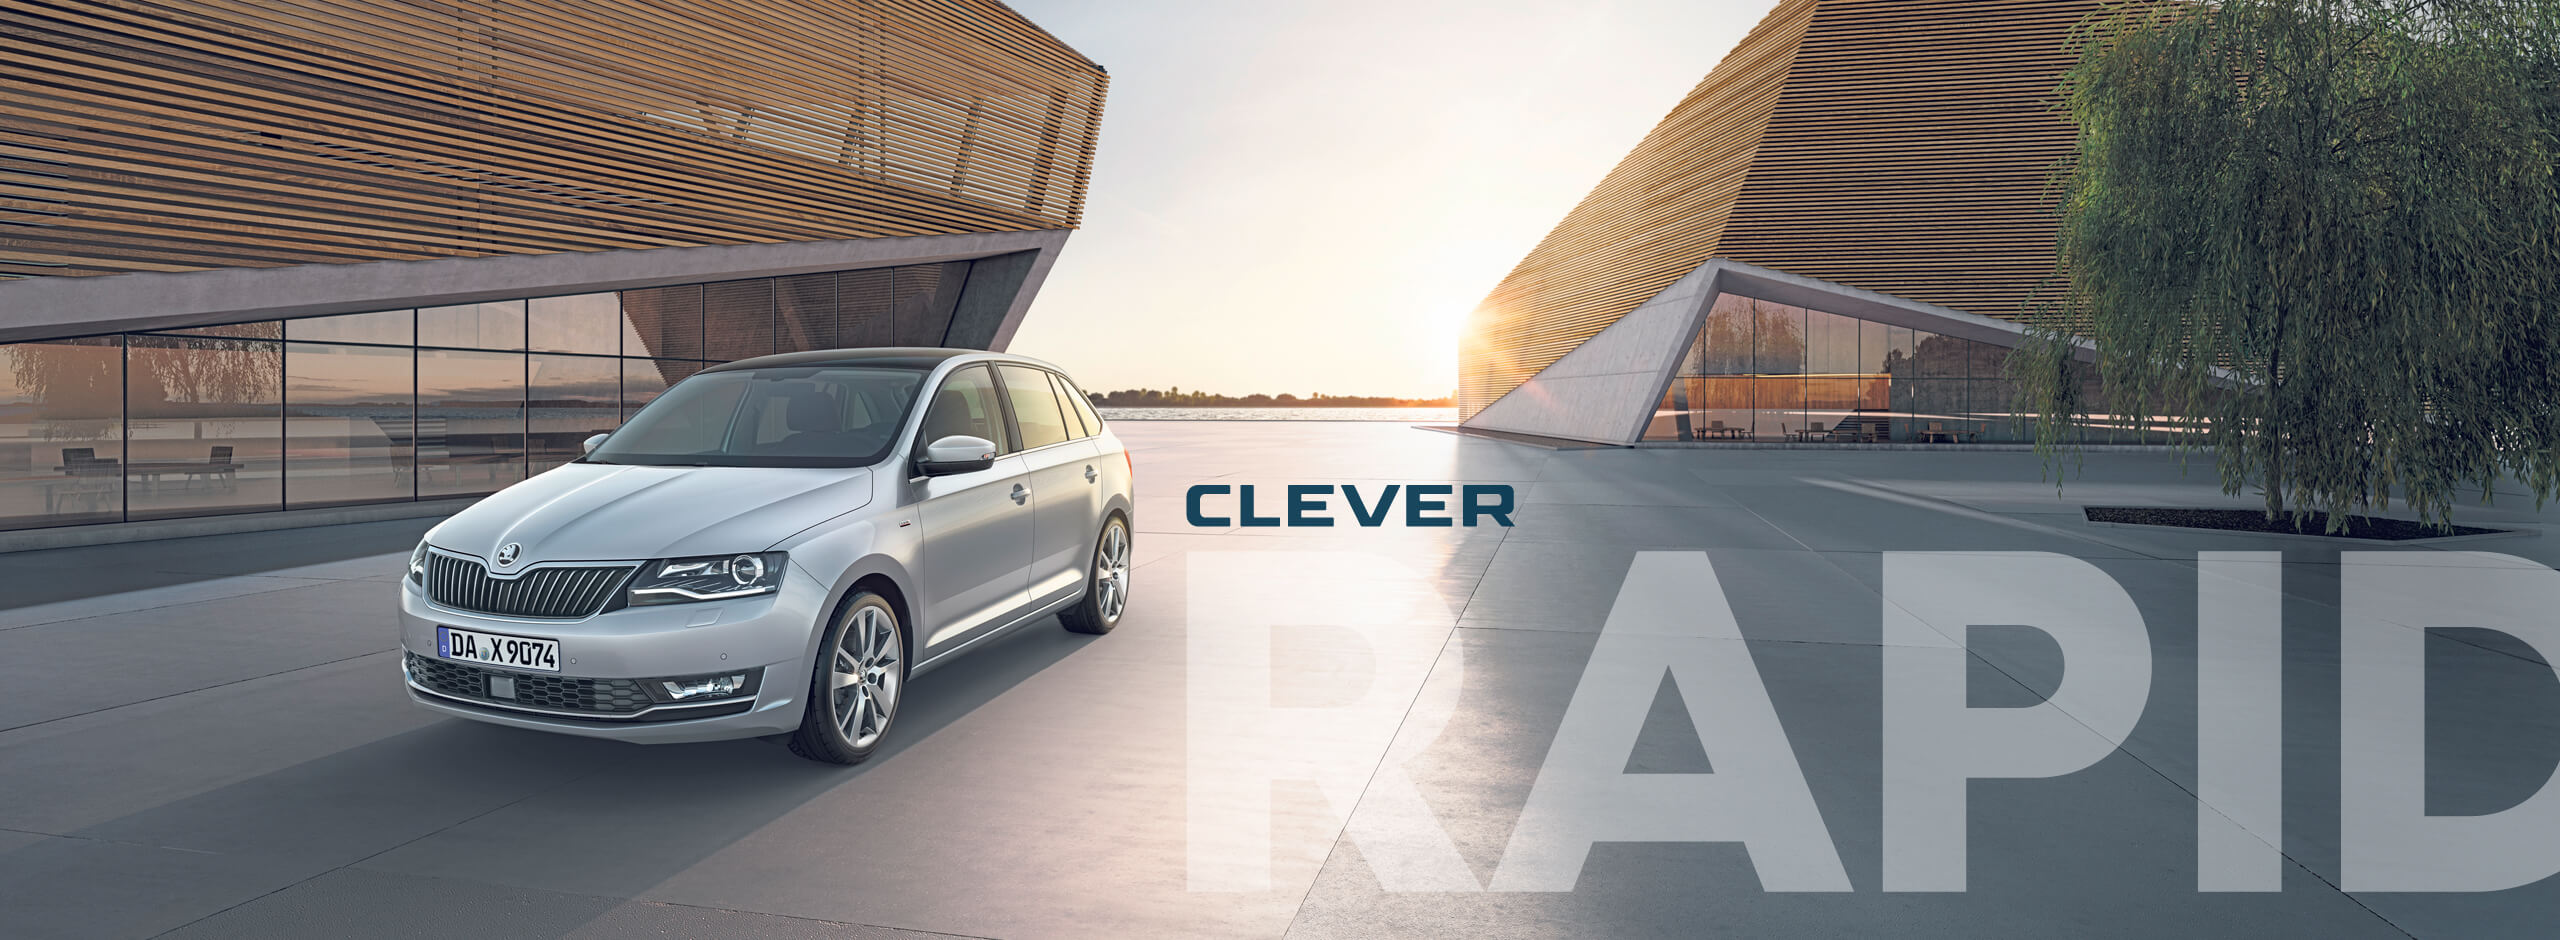 Die neue Rapid Škoda CLEVER Sondermodell 2018 jetzt bei Autohaus BIERING